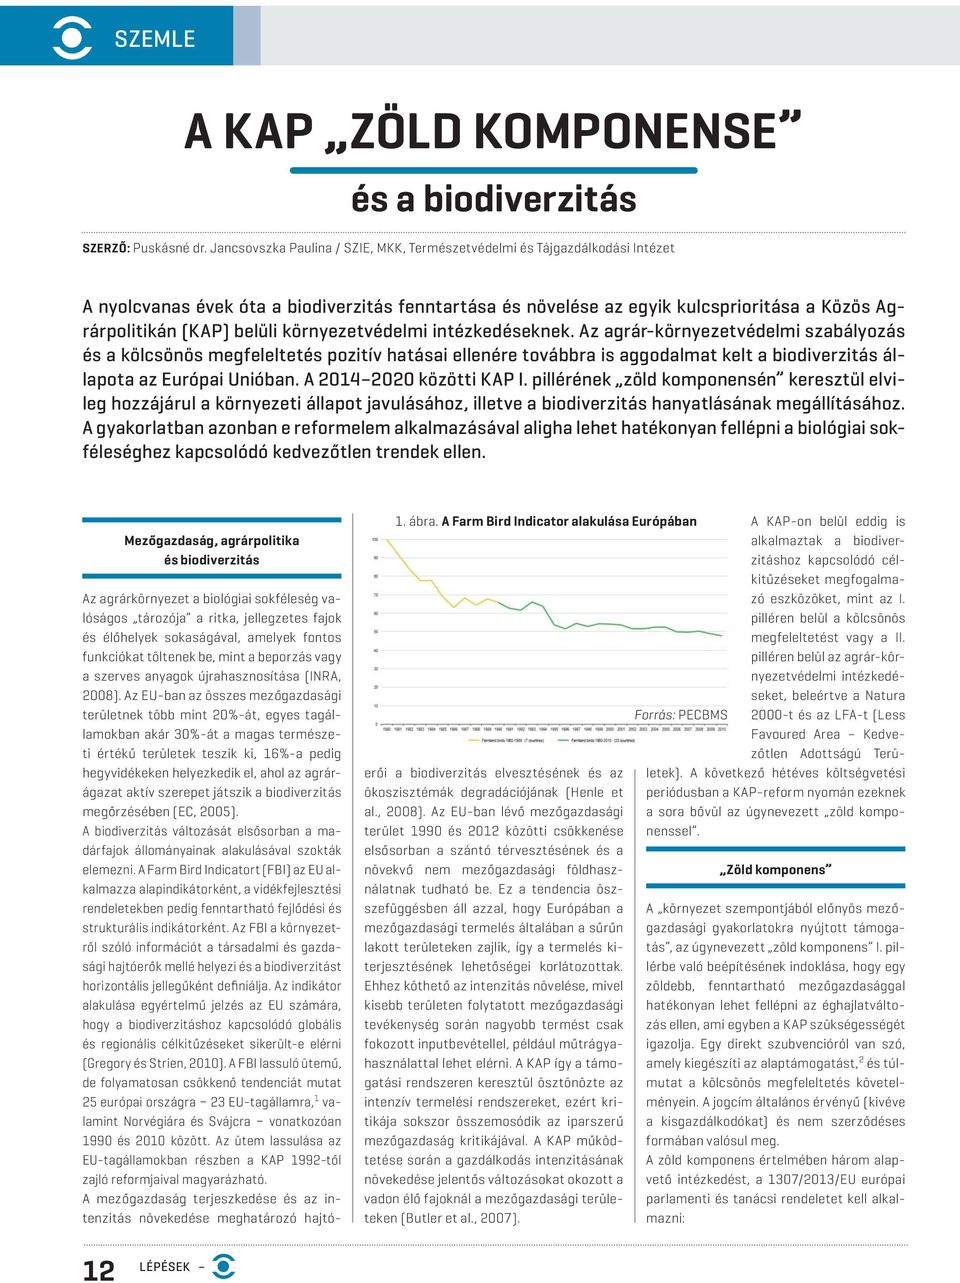 környezetvédelmi intézkedéseknek. Az agrár-környezetvédelmi szabályozás és a kölcsönös megfeleltetés pozitív hatásai ellenére továbbra is aggodalmat kelt a biodiverzitás állapota az Európai Unióban.